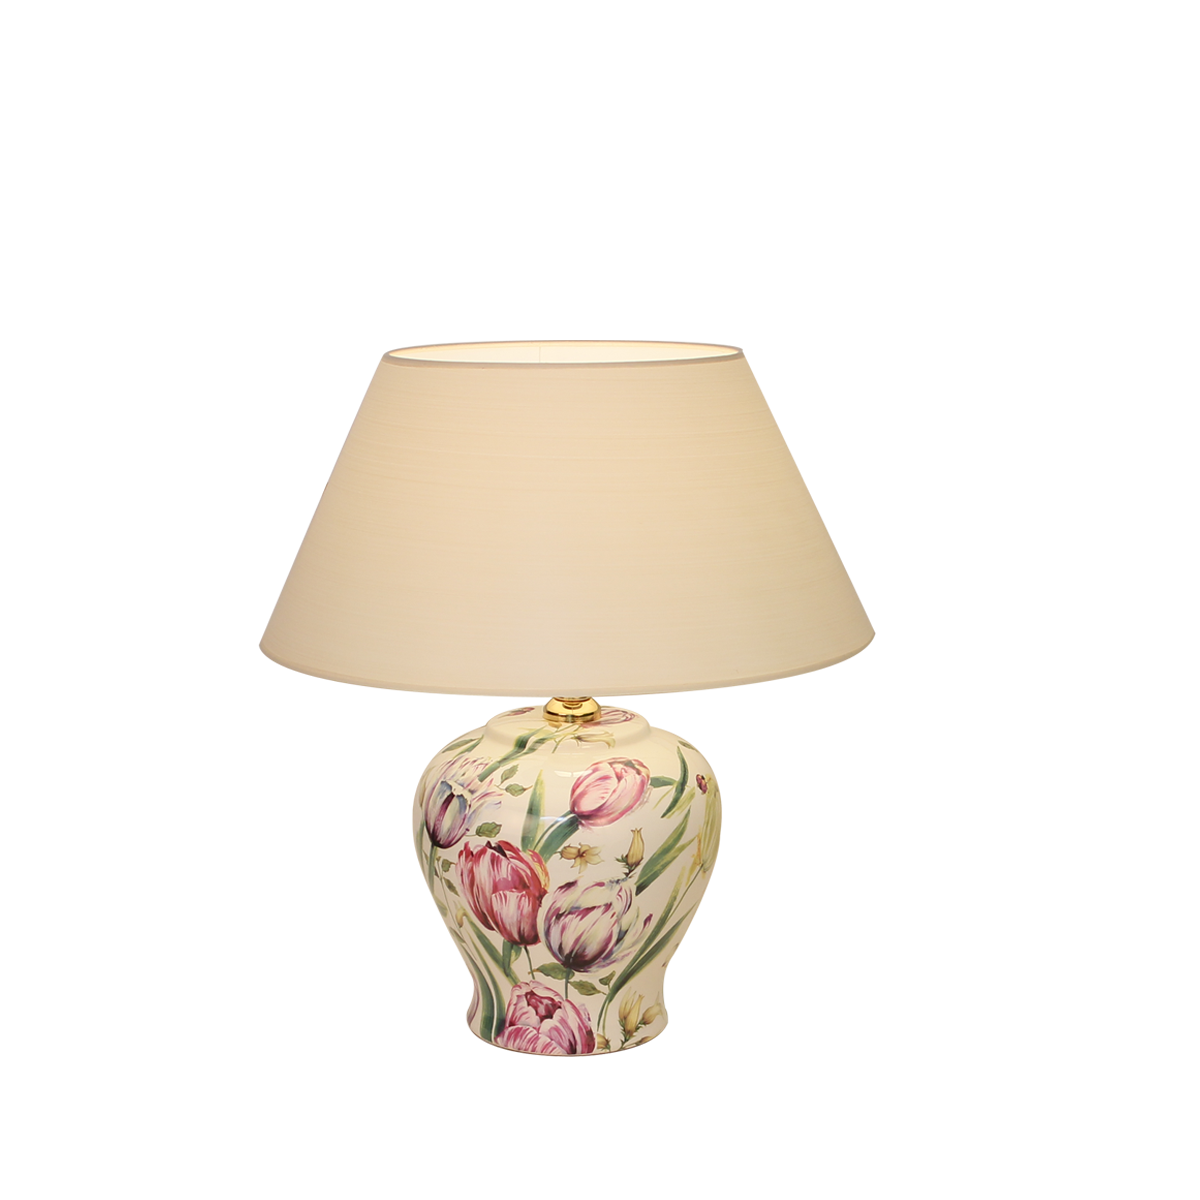 Tischleuchte 1 Keramik Vasenleuchte mit Dekor Tulpe E27 mit Lampenschirm in Strichlack Farbe nach Wahl